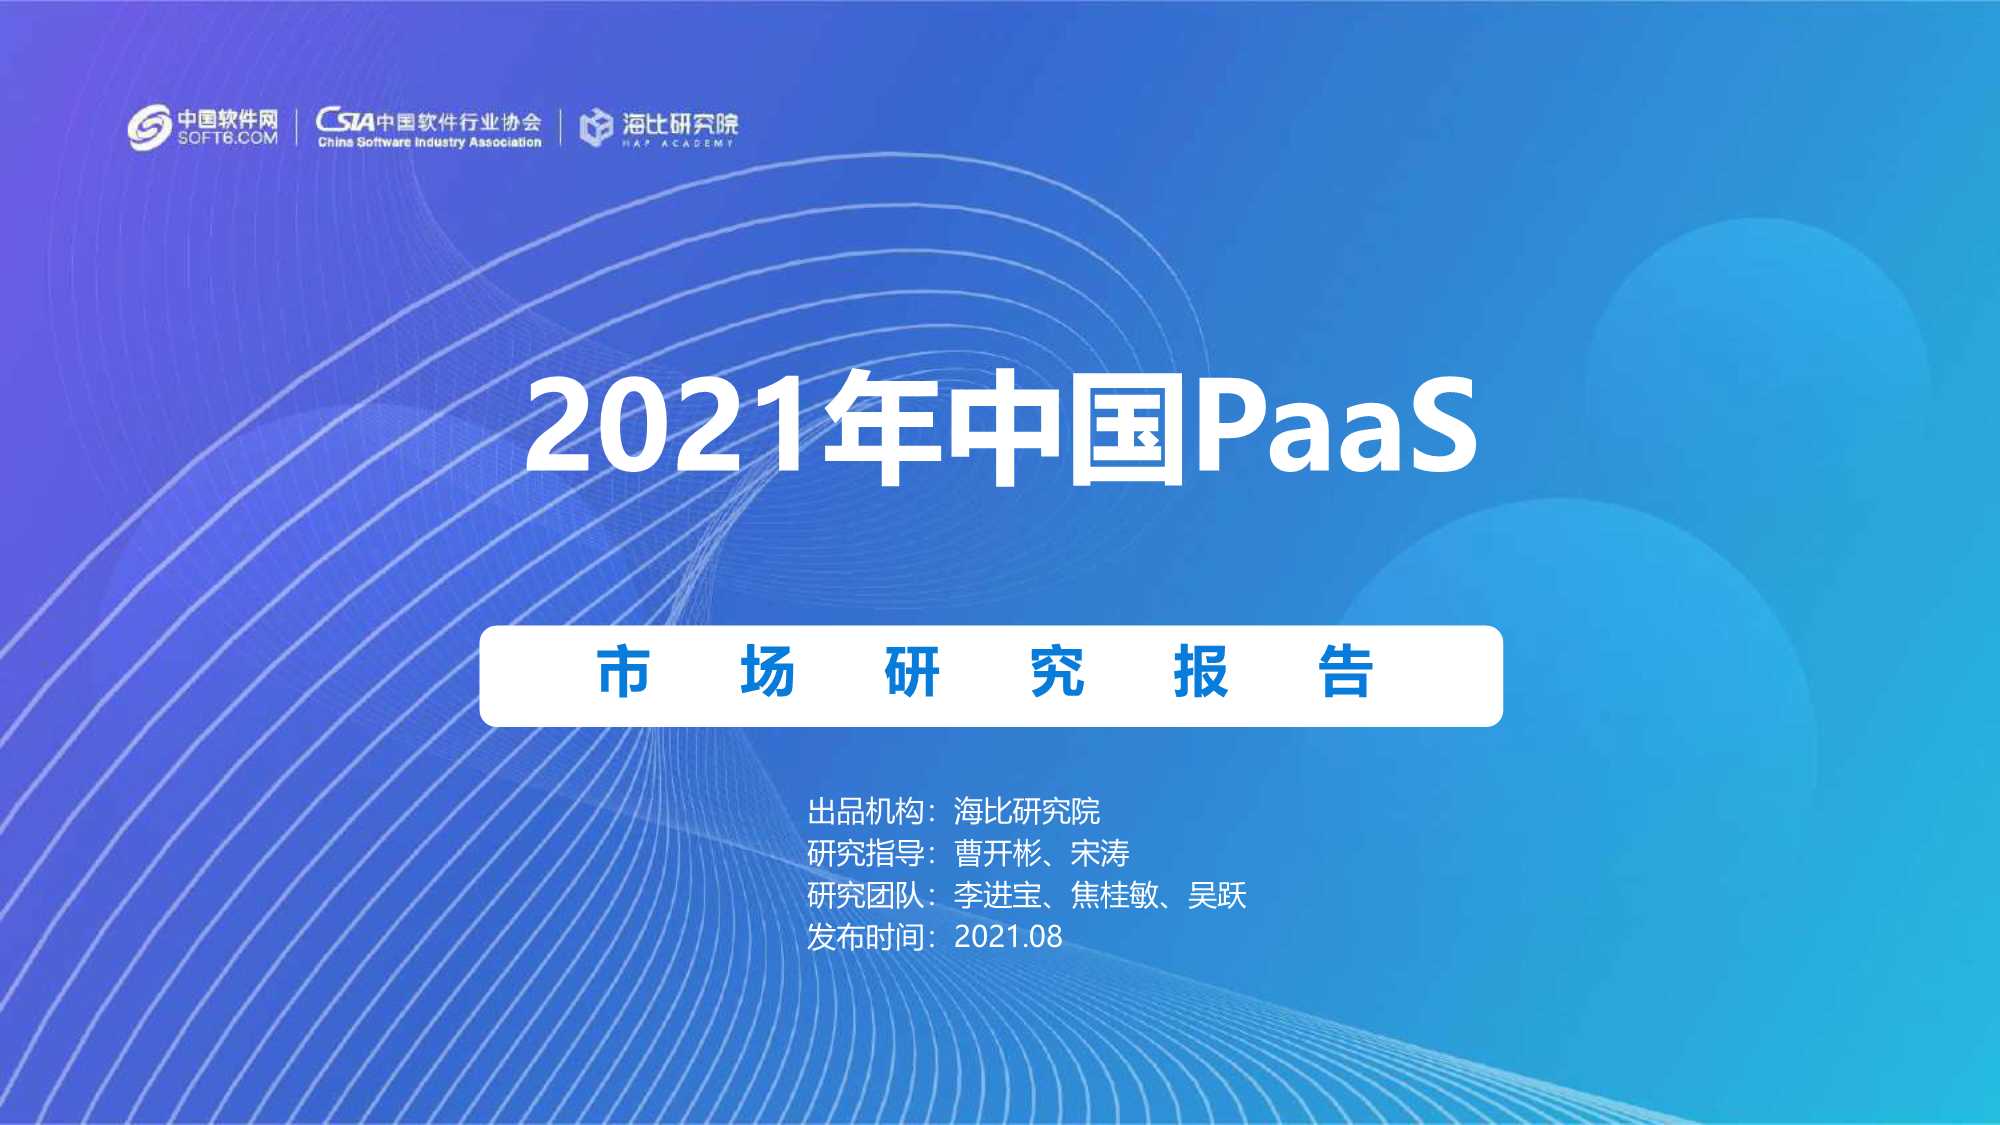 海比研究院-2021中国PaaS市场研究报告-2021.08-89页